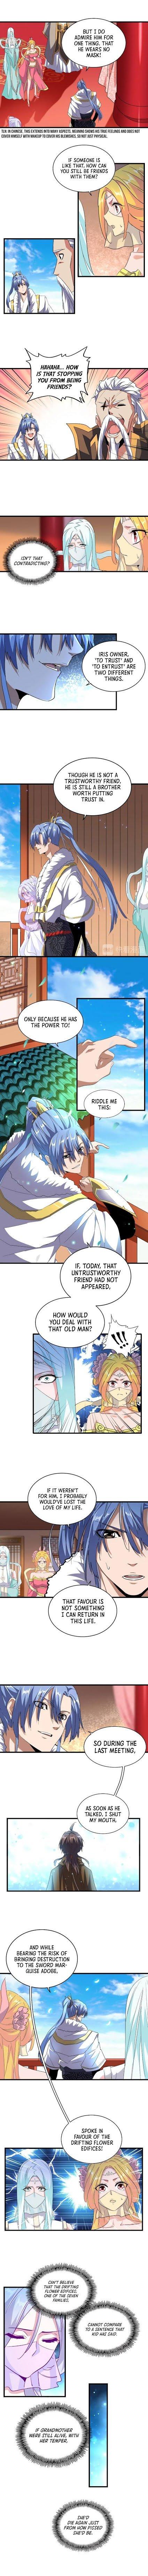 Magic Emperor Chapter 175 page 4 - Mangakakalot